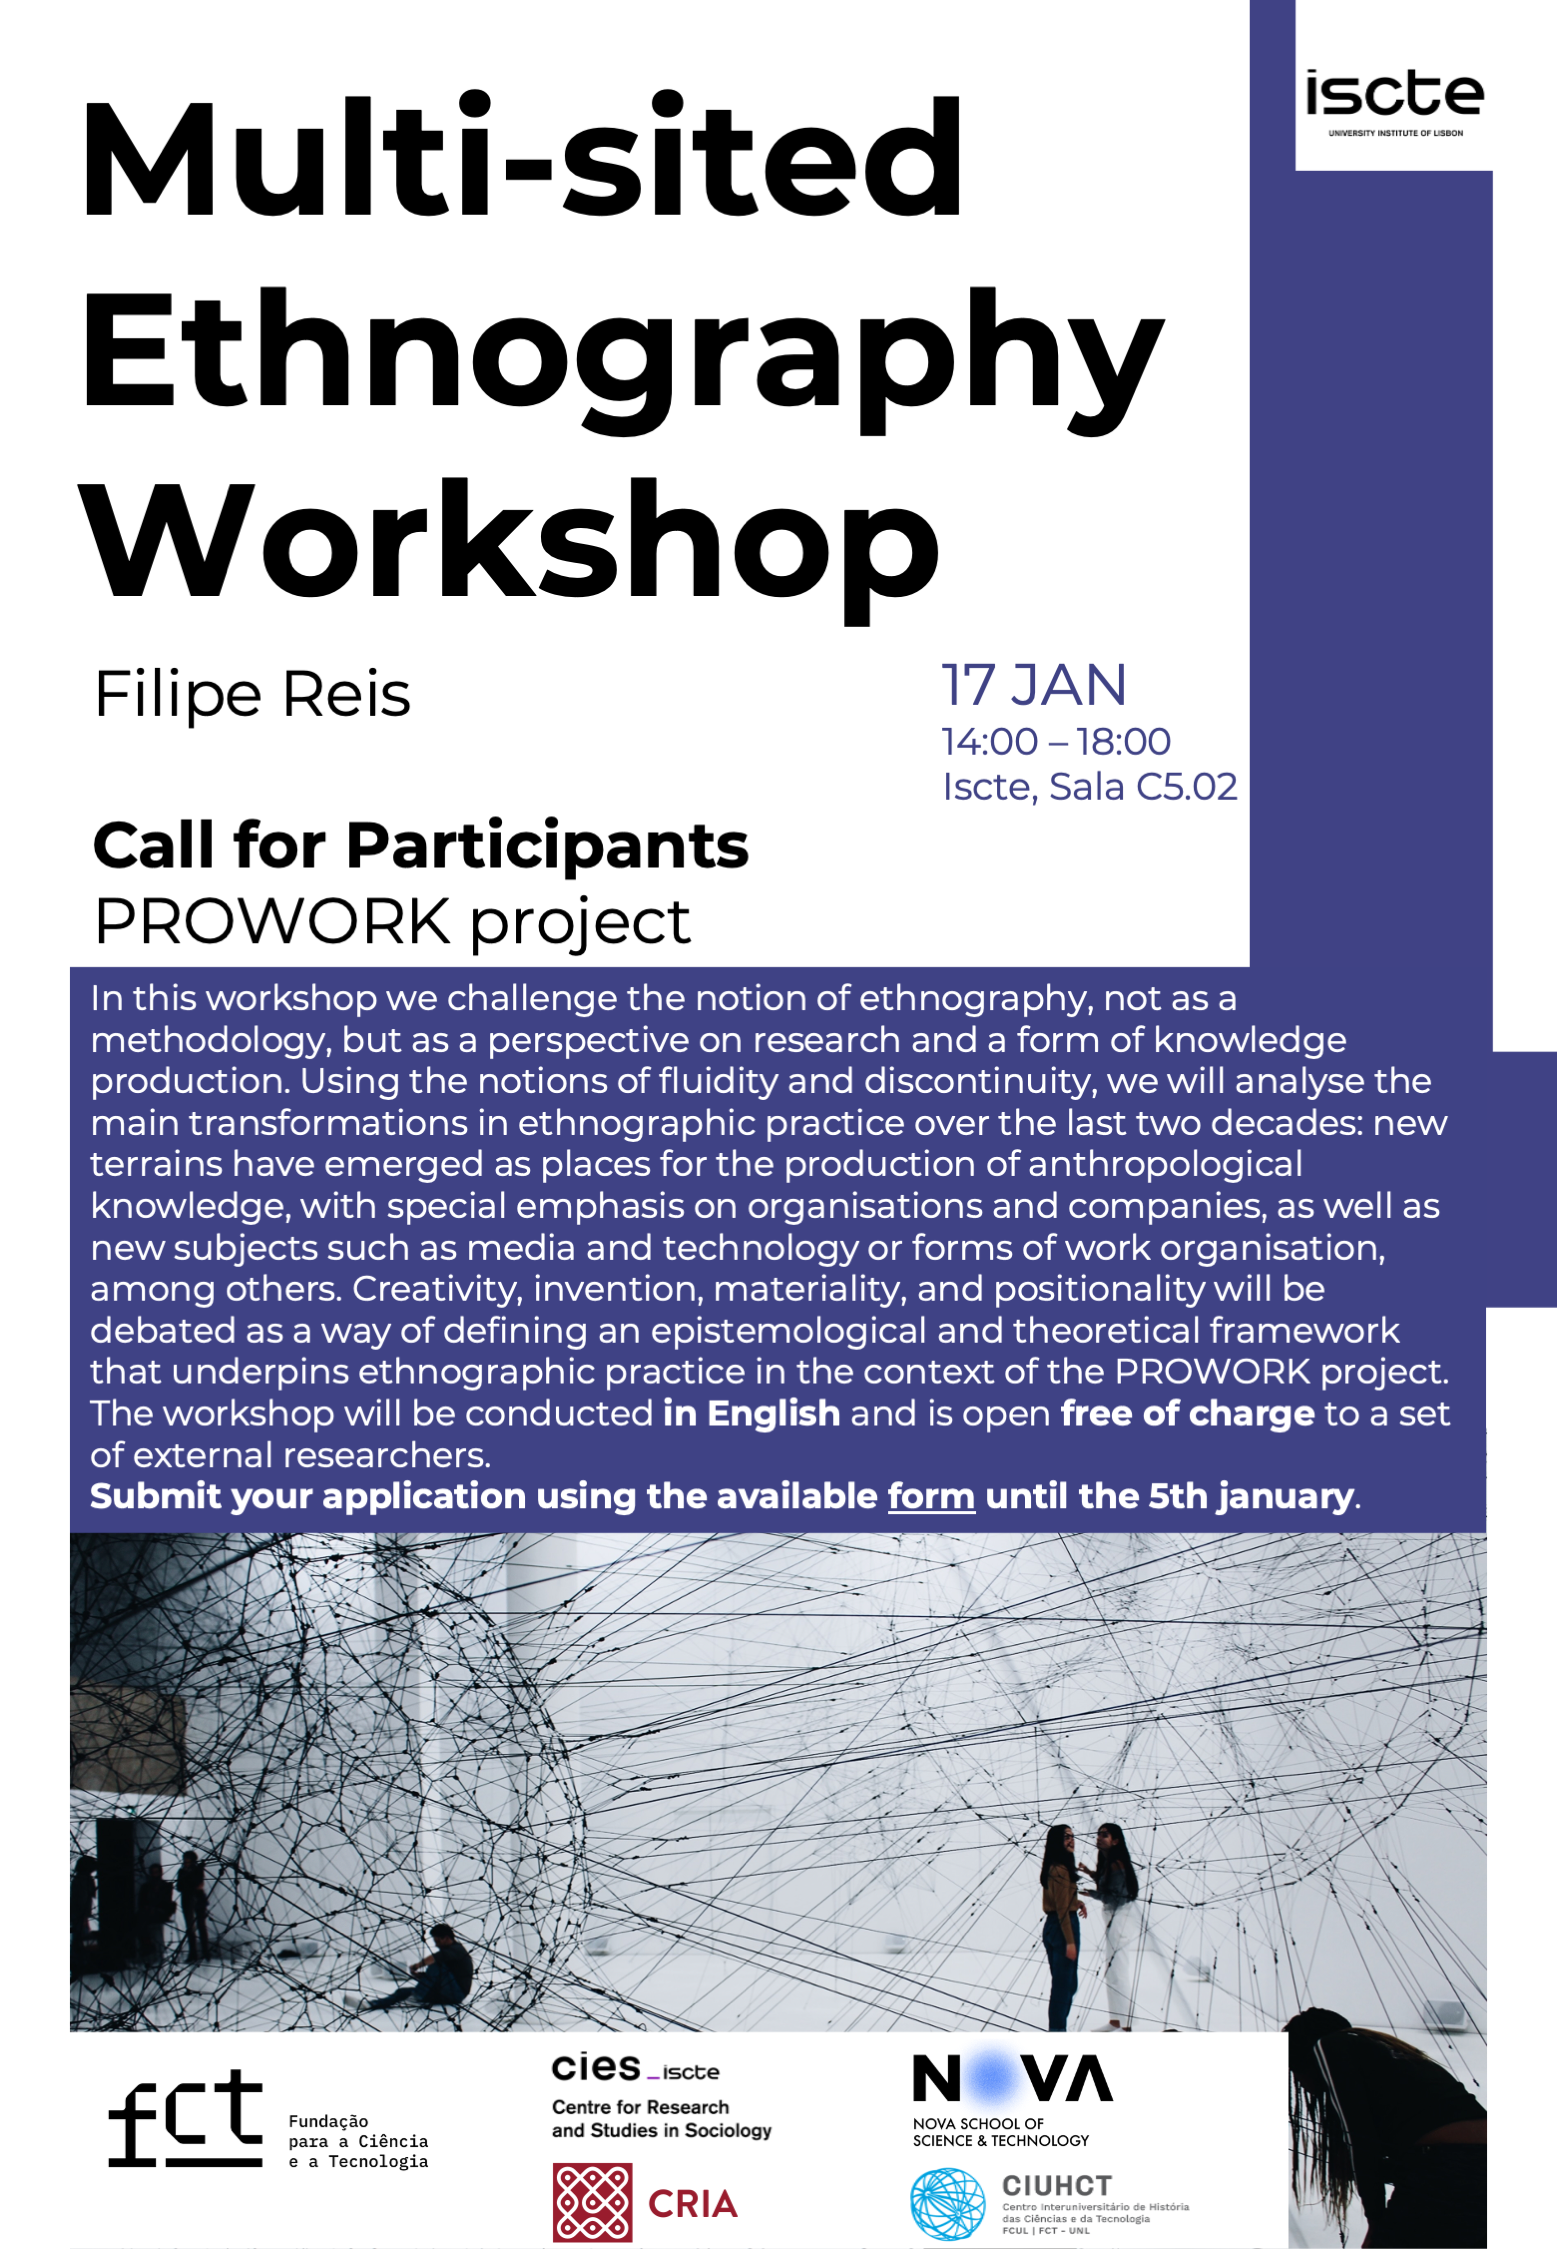 Multi-sited Ethnography Workshop